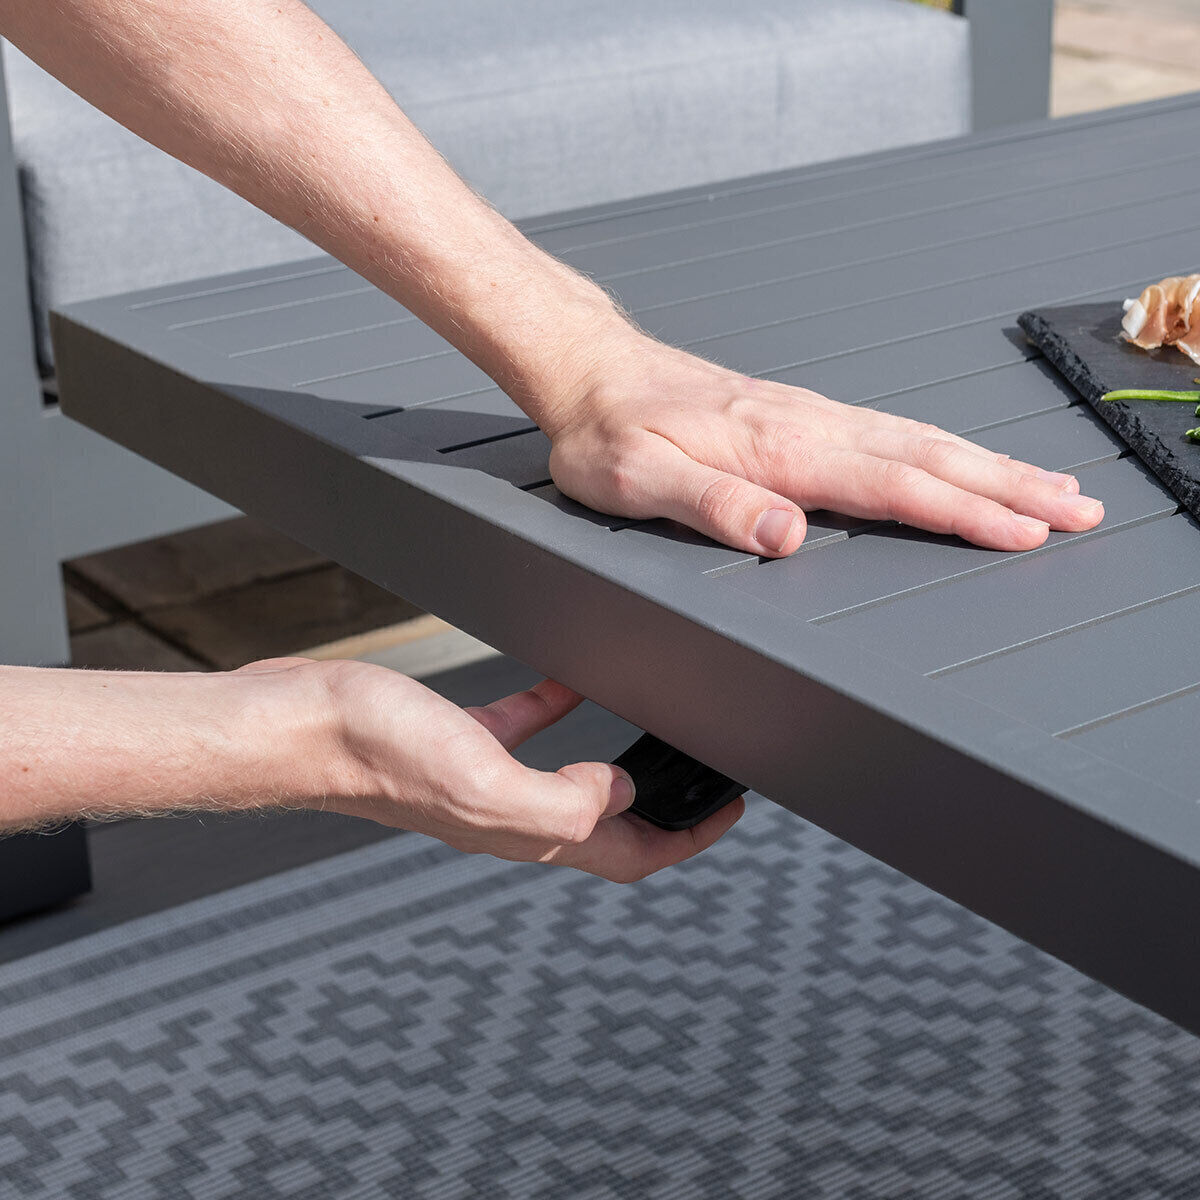 Maze - Amalfi Large Aluminium Corner Dining Set with Rising Table & Footstools - Grey product image